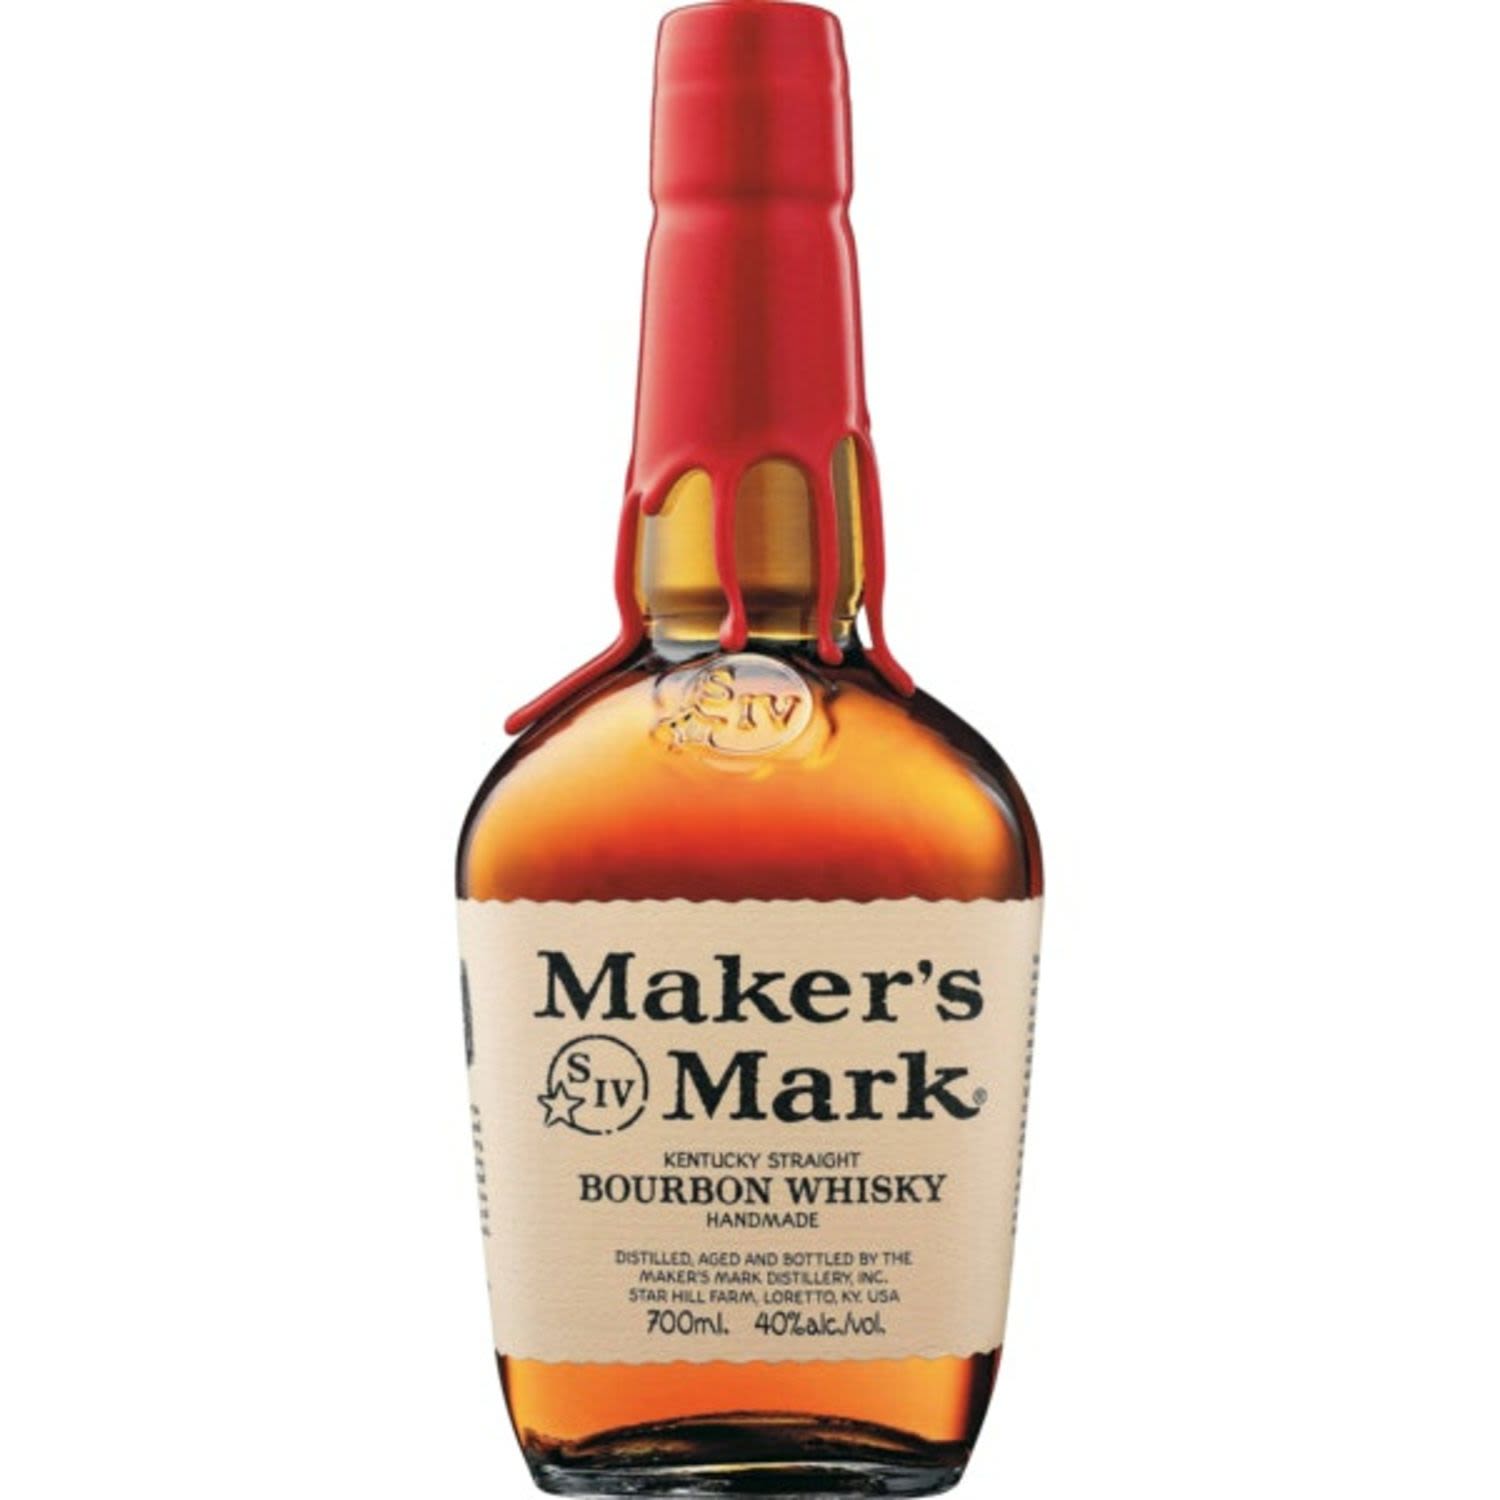 Maker's Mark Kentucky Straight Bourbon Whisky 700mL Bottle